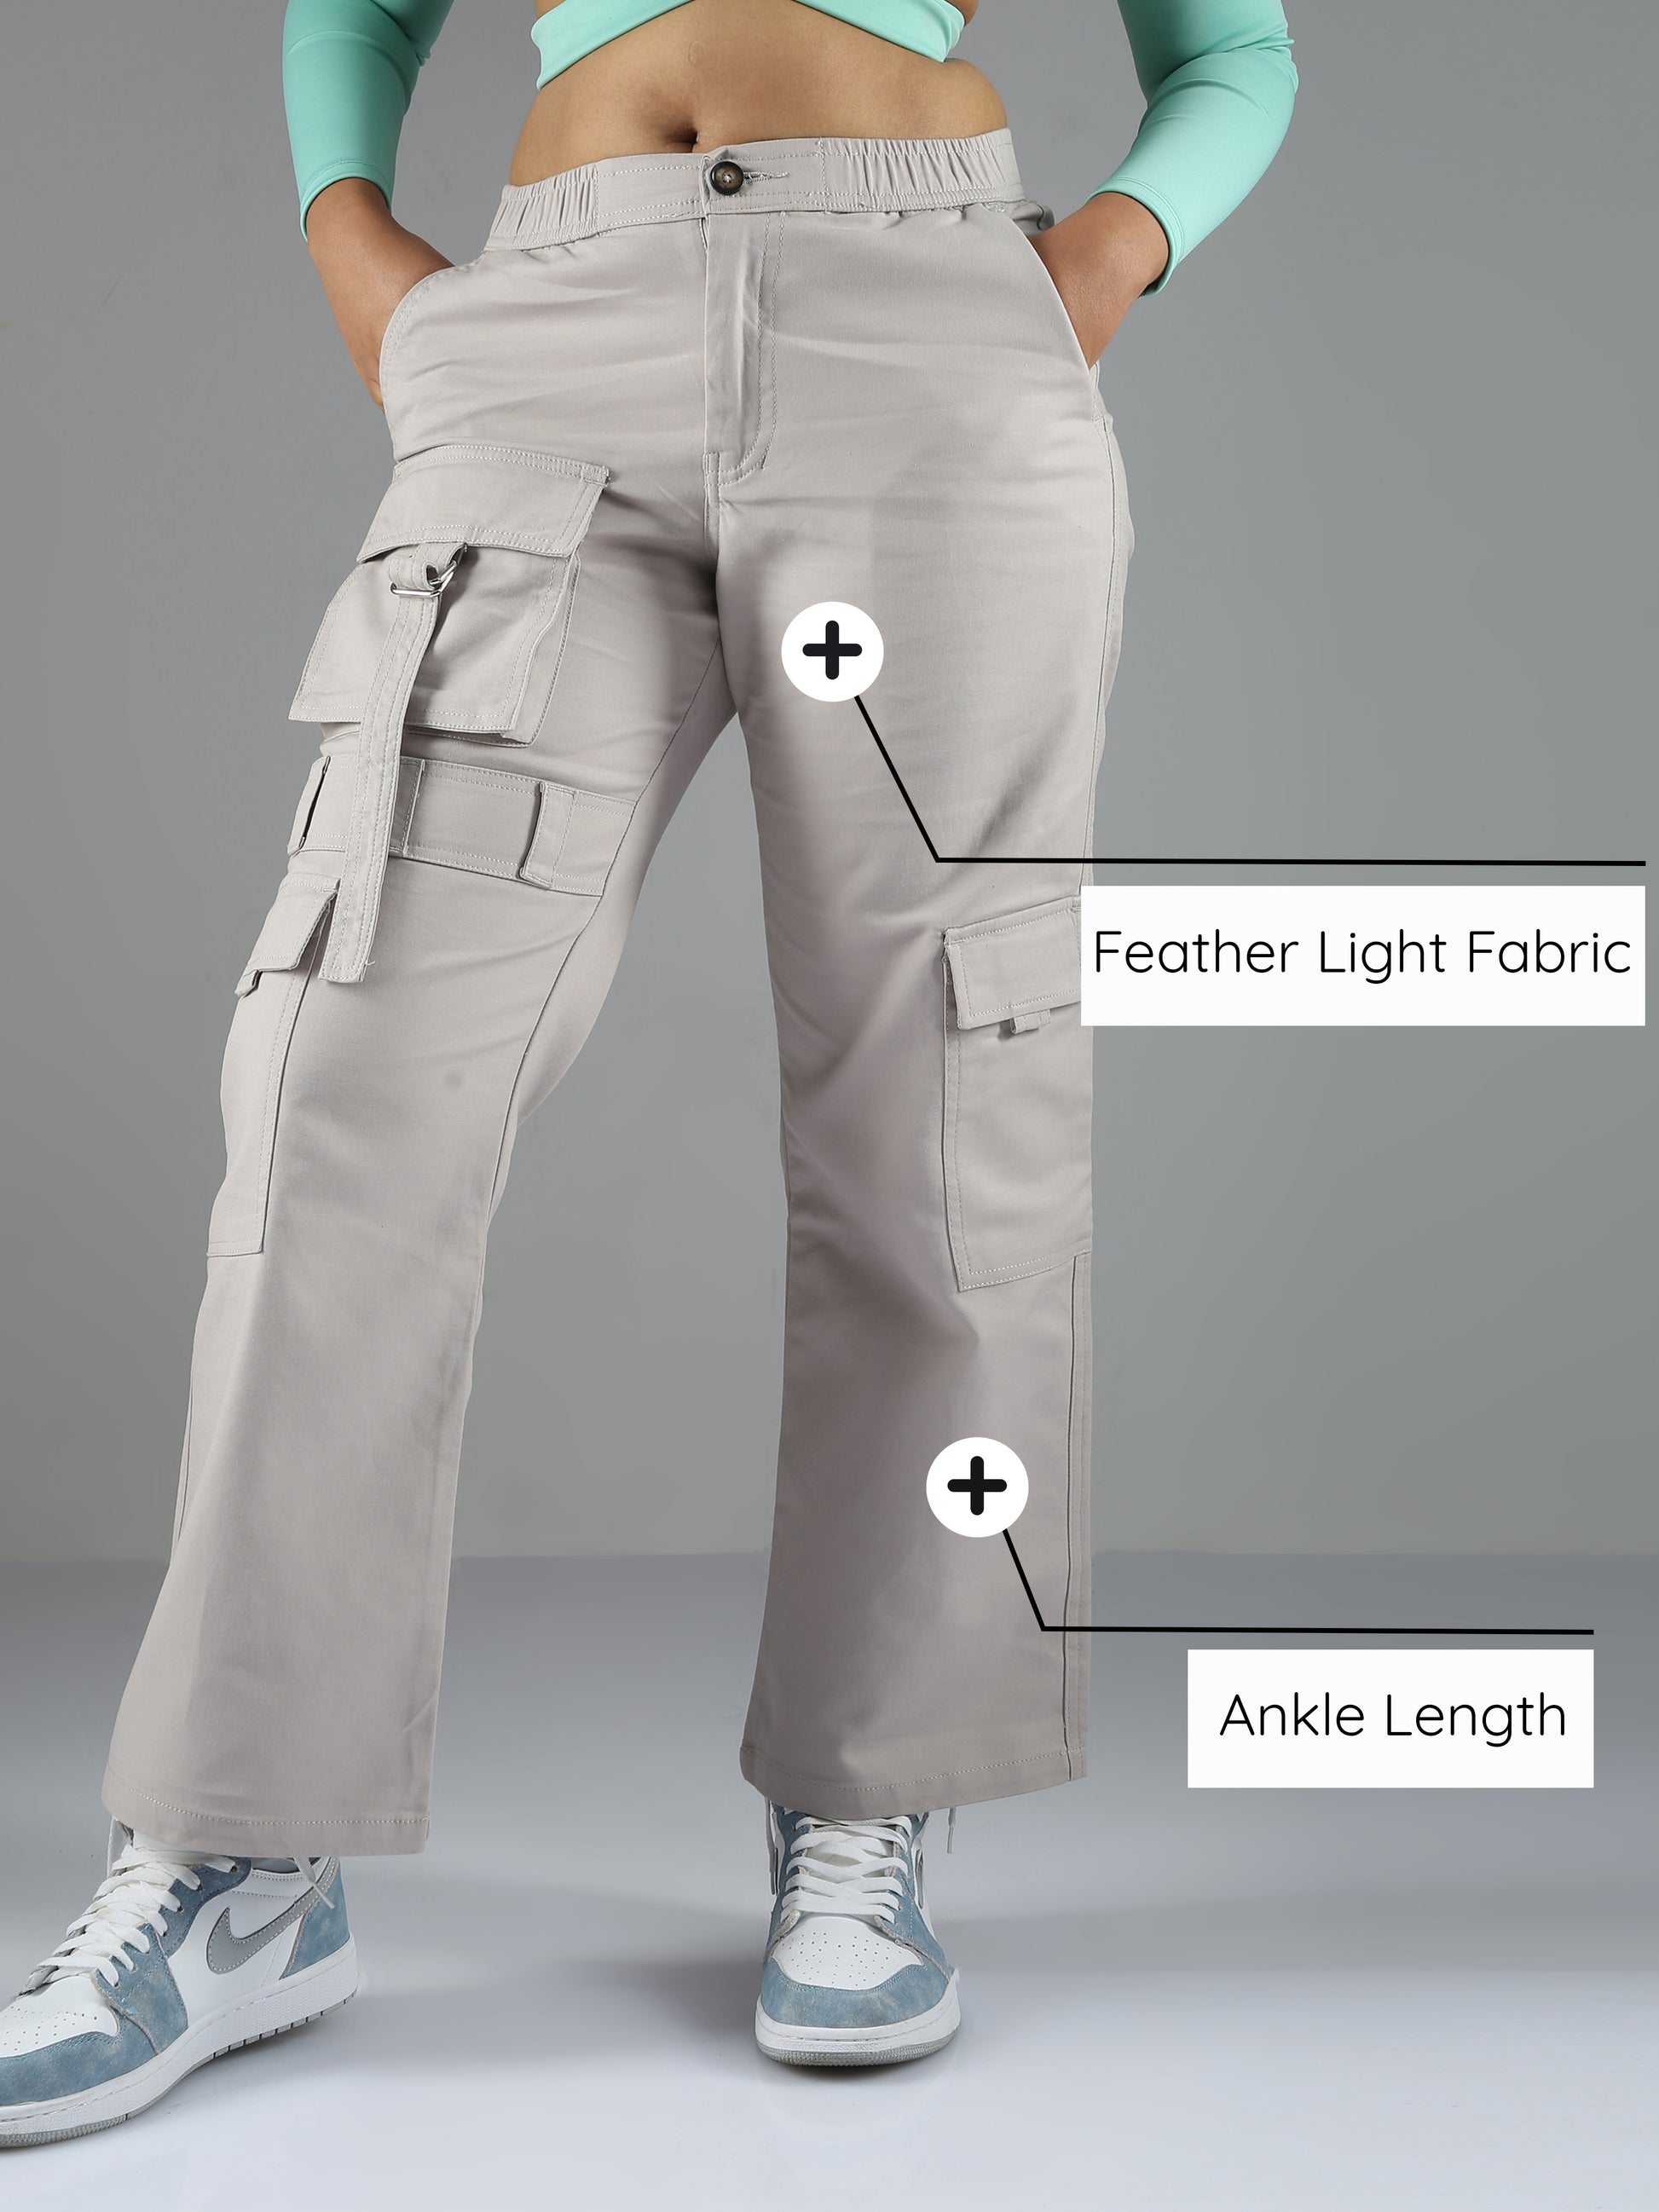 Cargo Pants - Light beige - Ladies